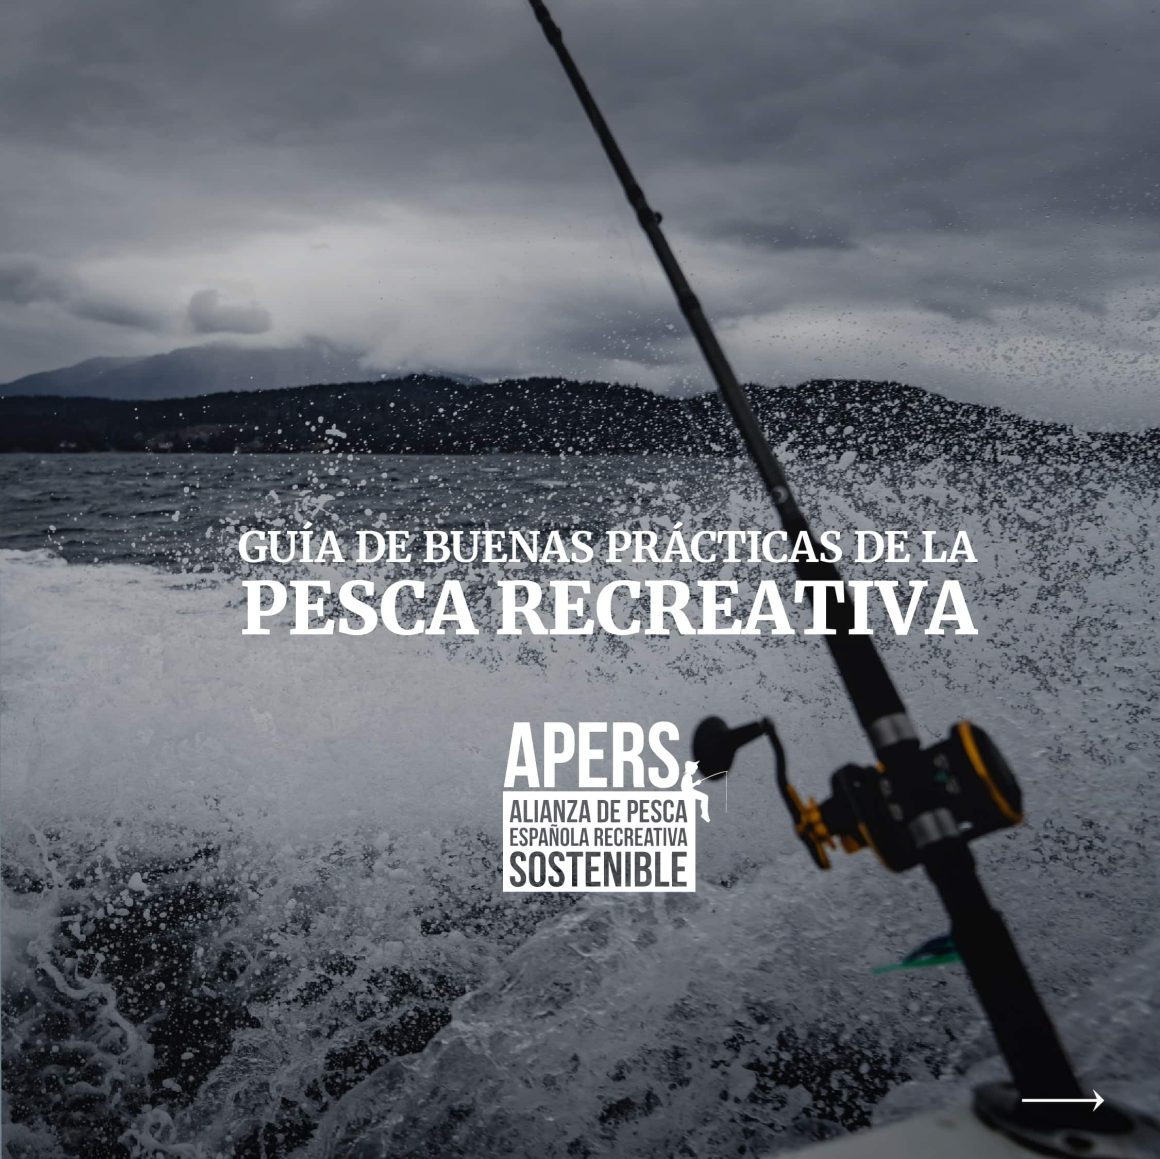 Guía de las buenas prácticas de la pesca recreativa